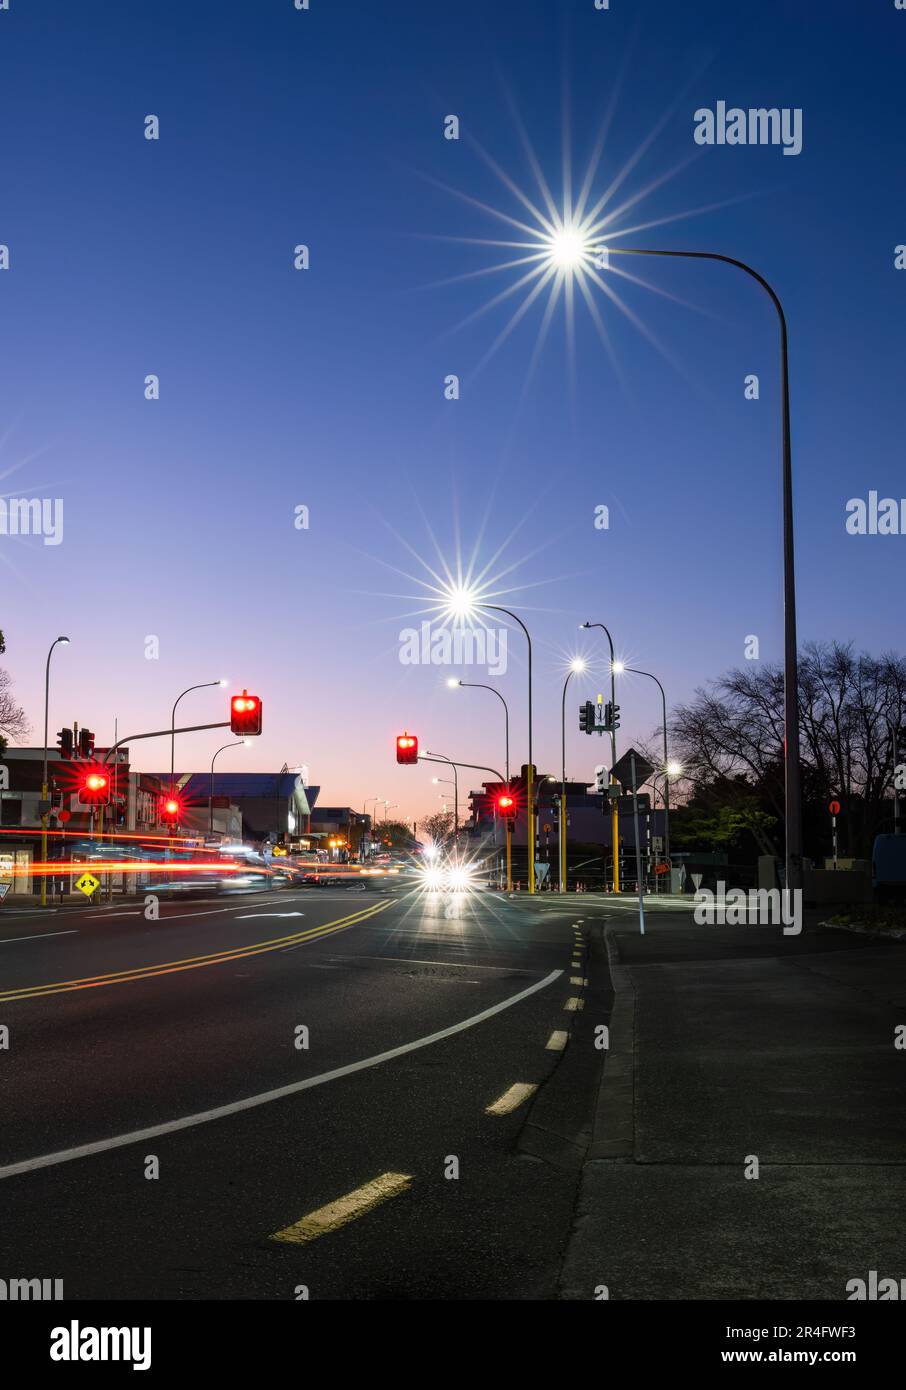 Les feux de signalisation sont allumés au feu rouge à l'intersection. Auckland. Format vertical. Banque D'Images